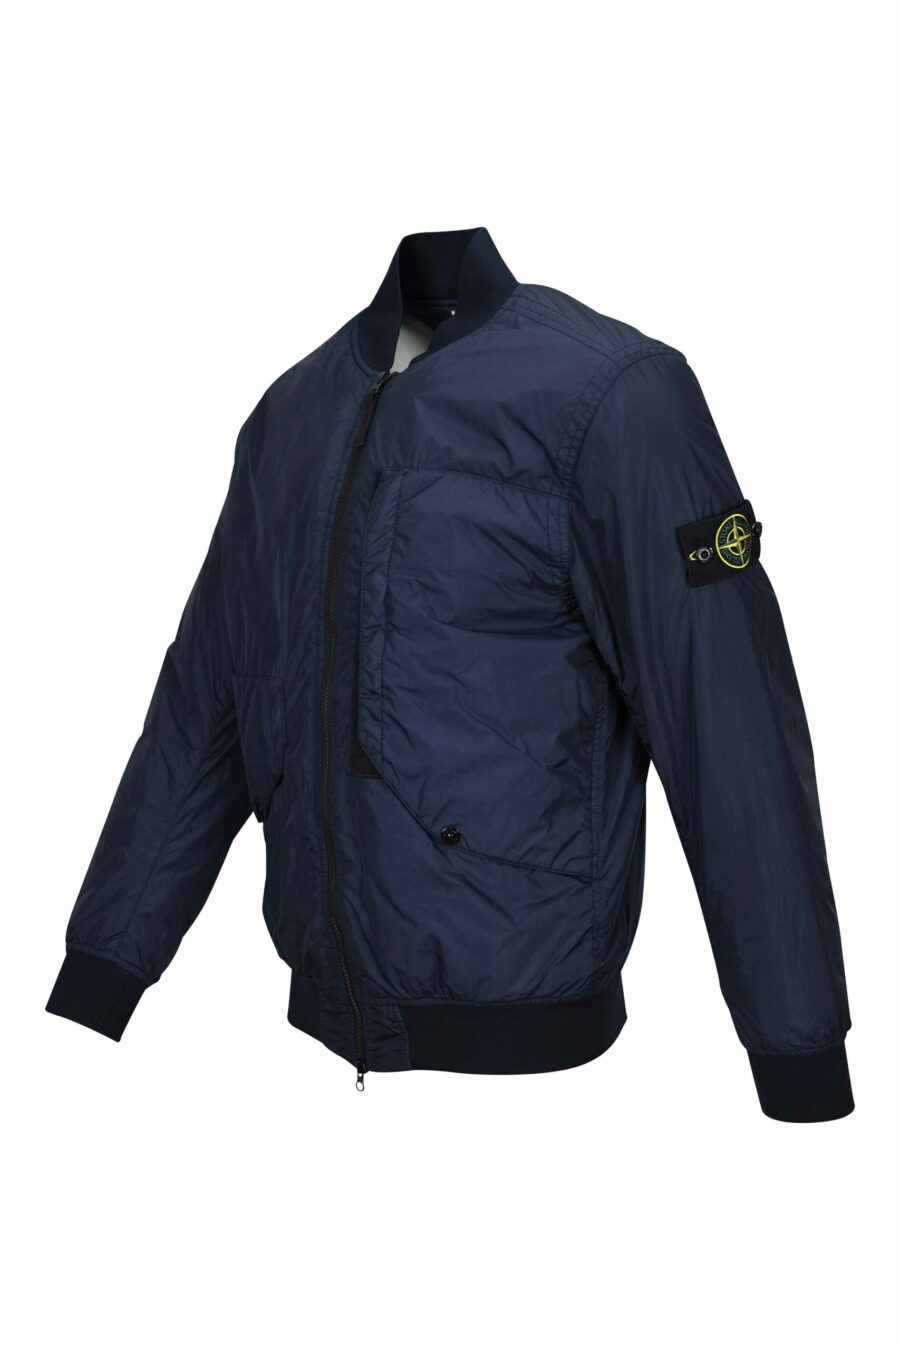 Blaue Jacke mit Logo-Seitenaufnäher - 8052572762185 1 skaliert